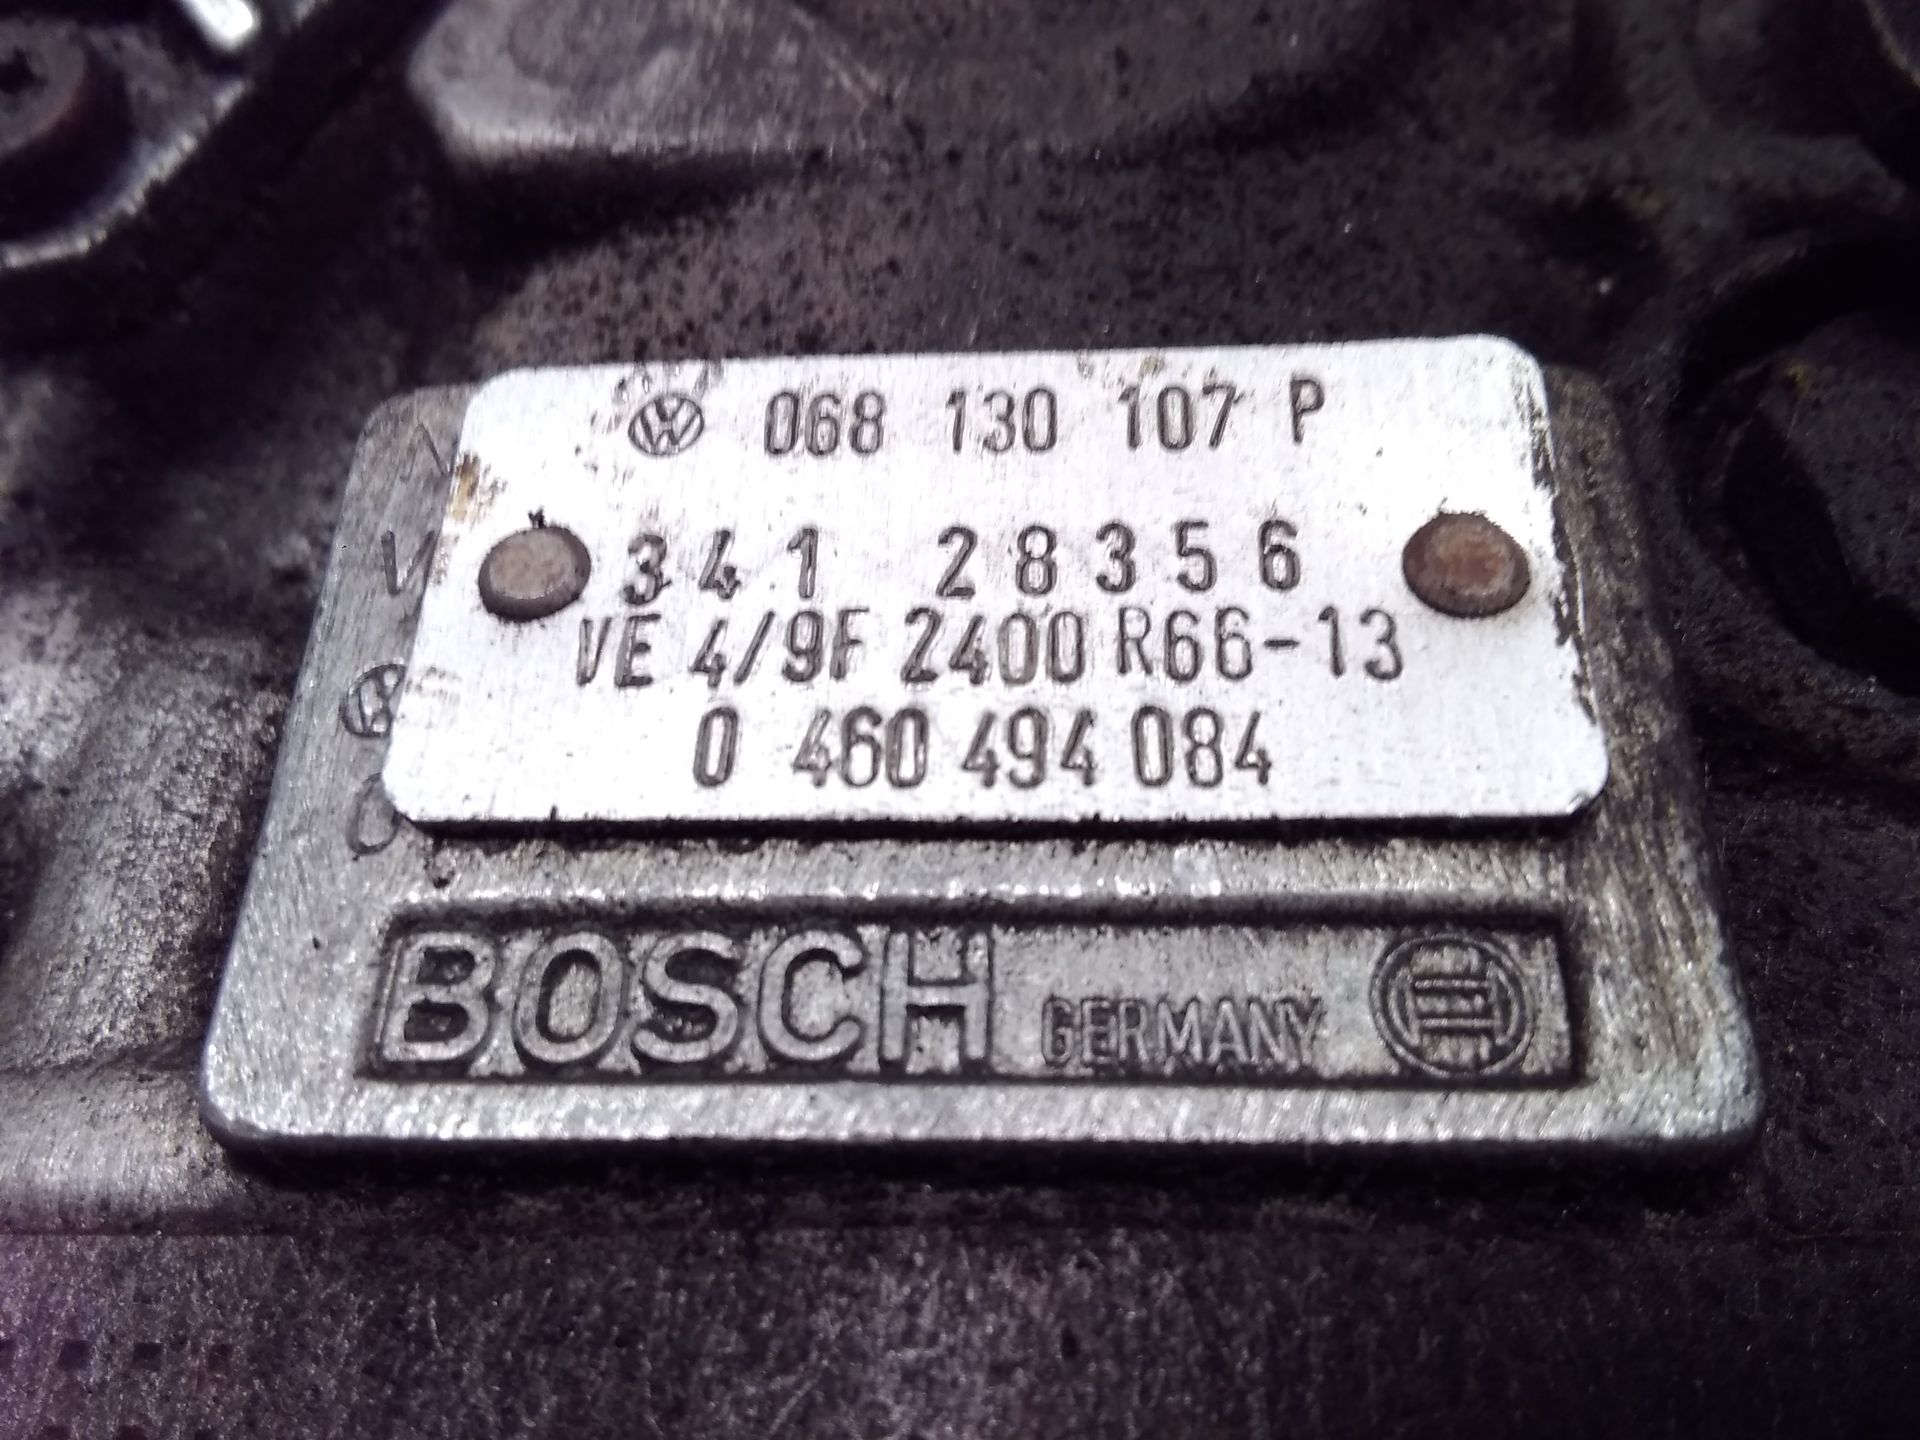 VW Golf 2 original Einspritzpumpe 068130107P Bosch 0460494084 1.6D 40kw